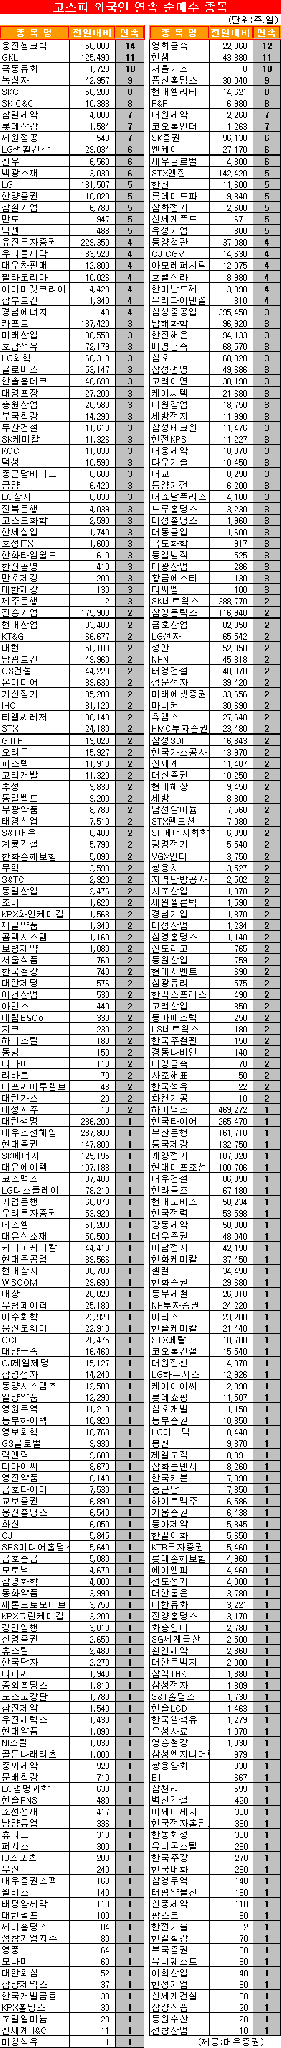 [표]코스피 외국인 연속 순매수 종목-4일